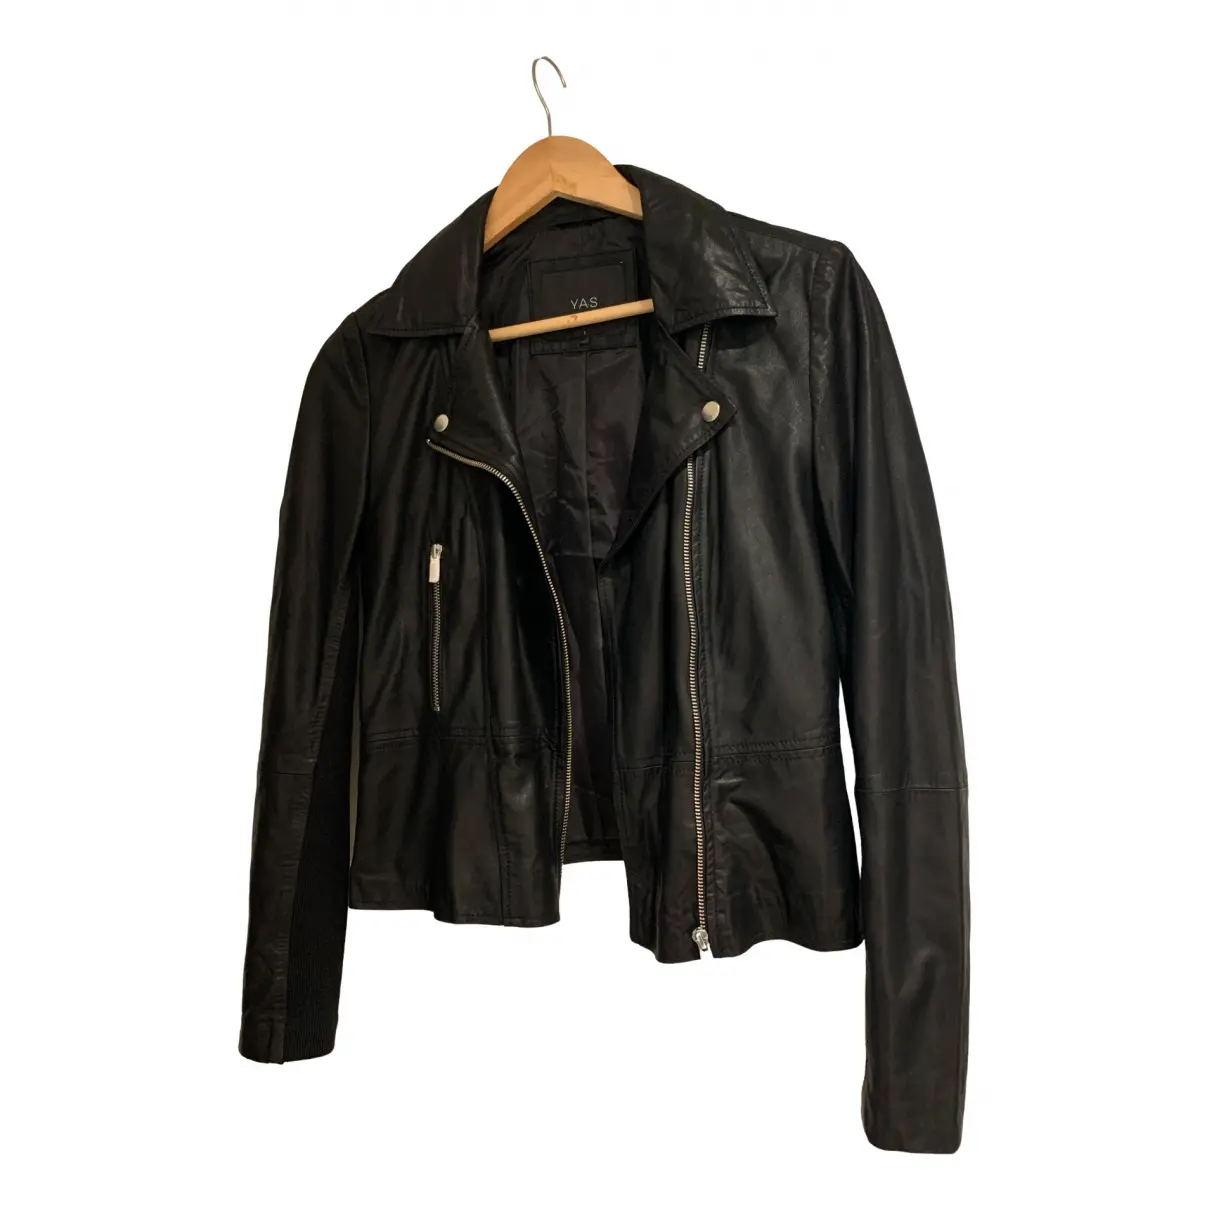 Leather jacket Yas